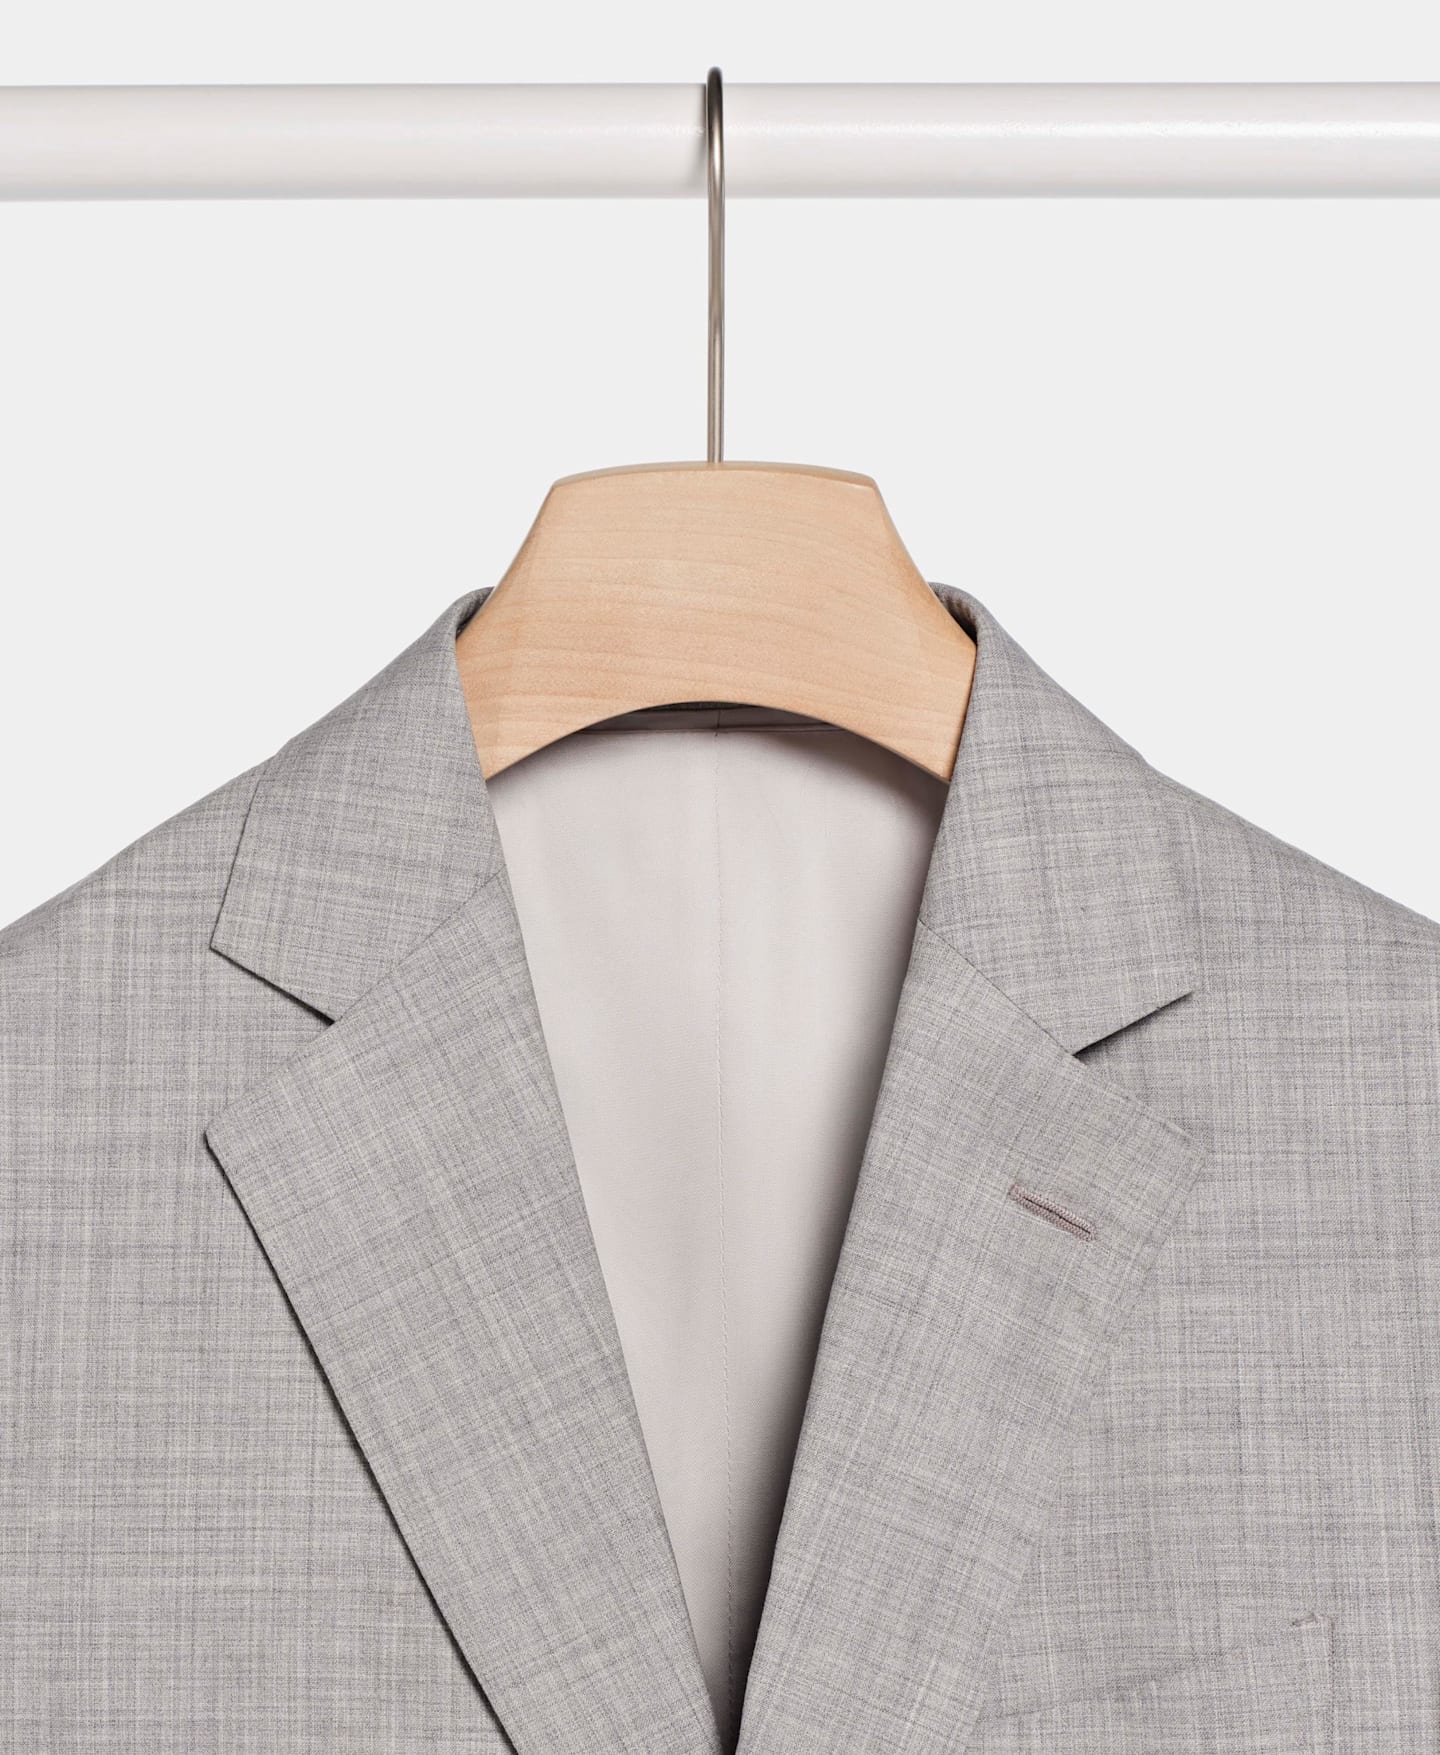 Detail shot of light grey suit jacket hanging on wooden hanger